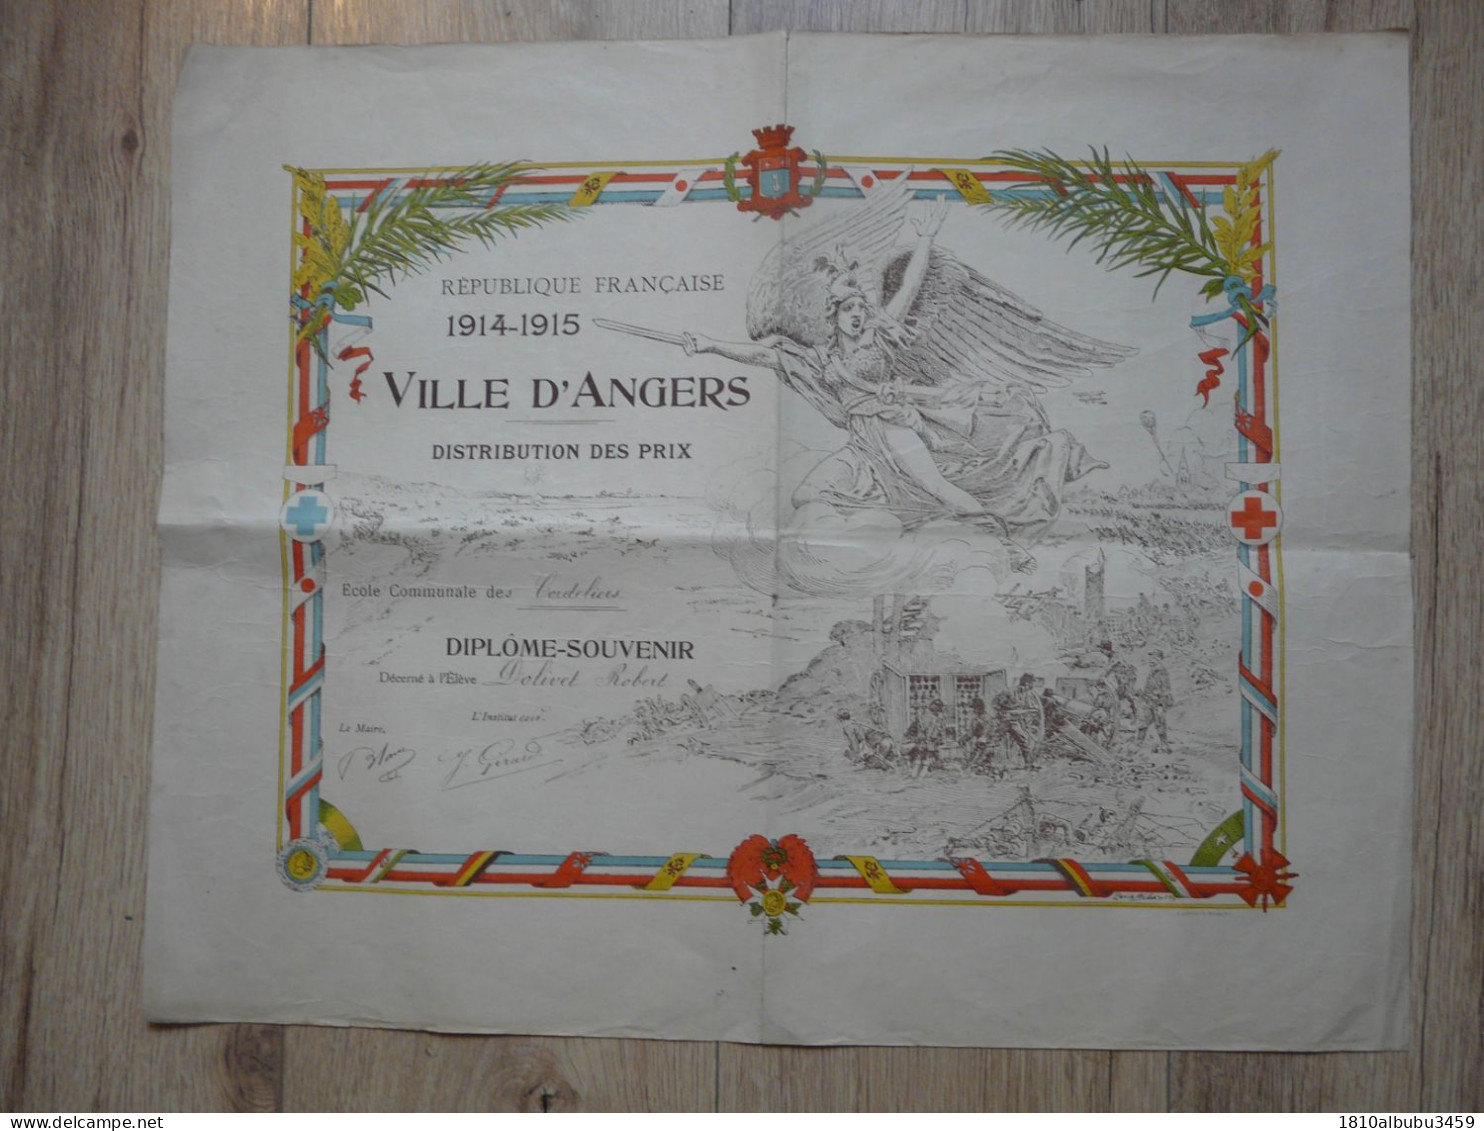 VIEUX PAPIERS - DIPLÔME-SOUVENIR (54,5 X 44 Cm) : Distribution Des Prix - VILLE D'ANGERS 1914-1915 - Diploma & School Reports